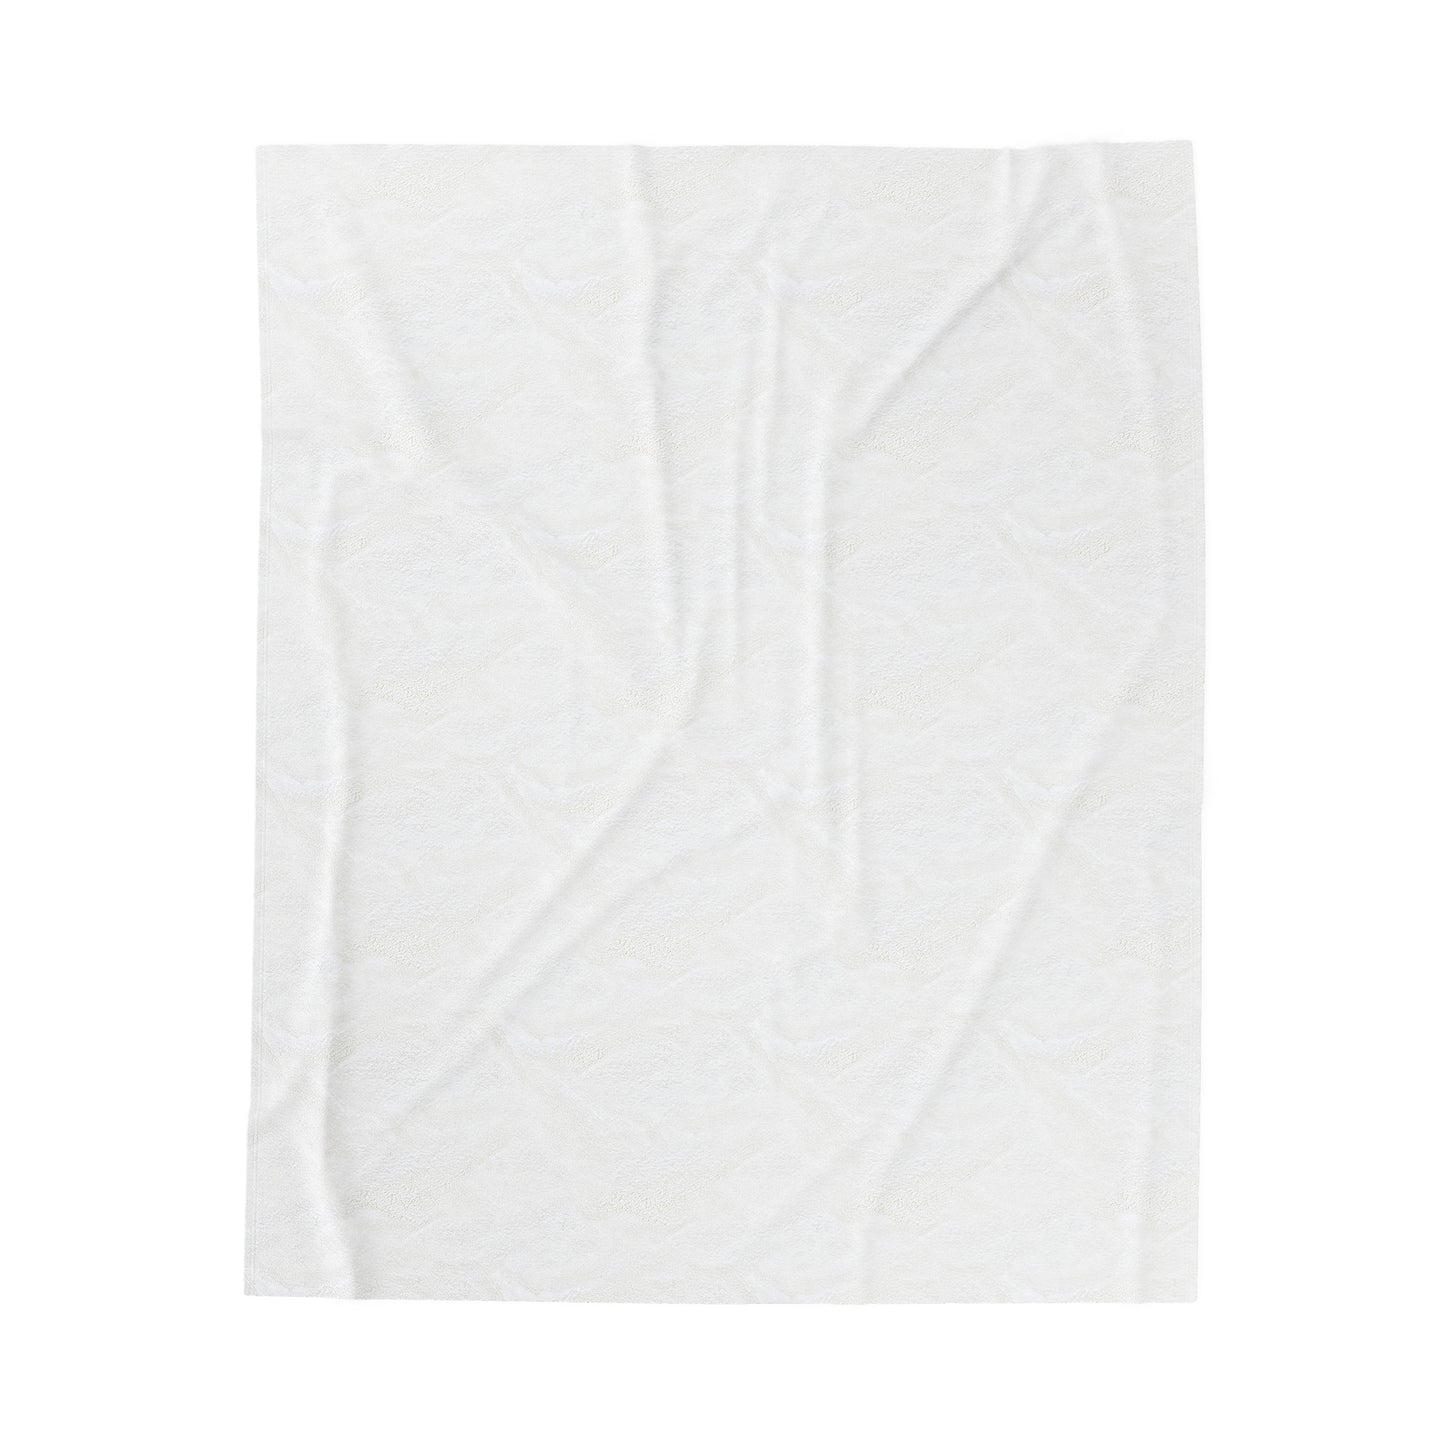 941’s finest Plush Blanket (solid color design)